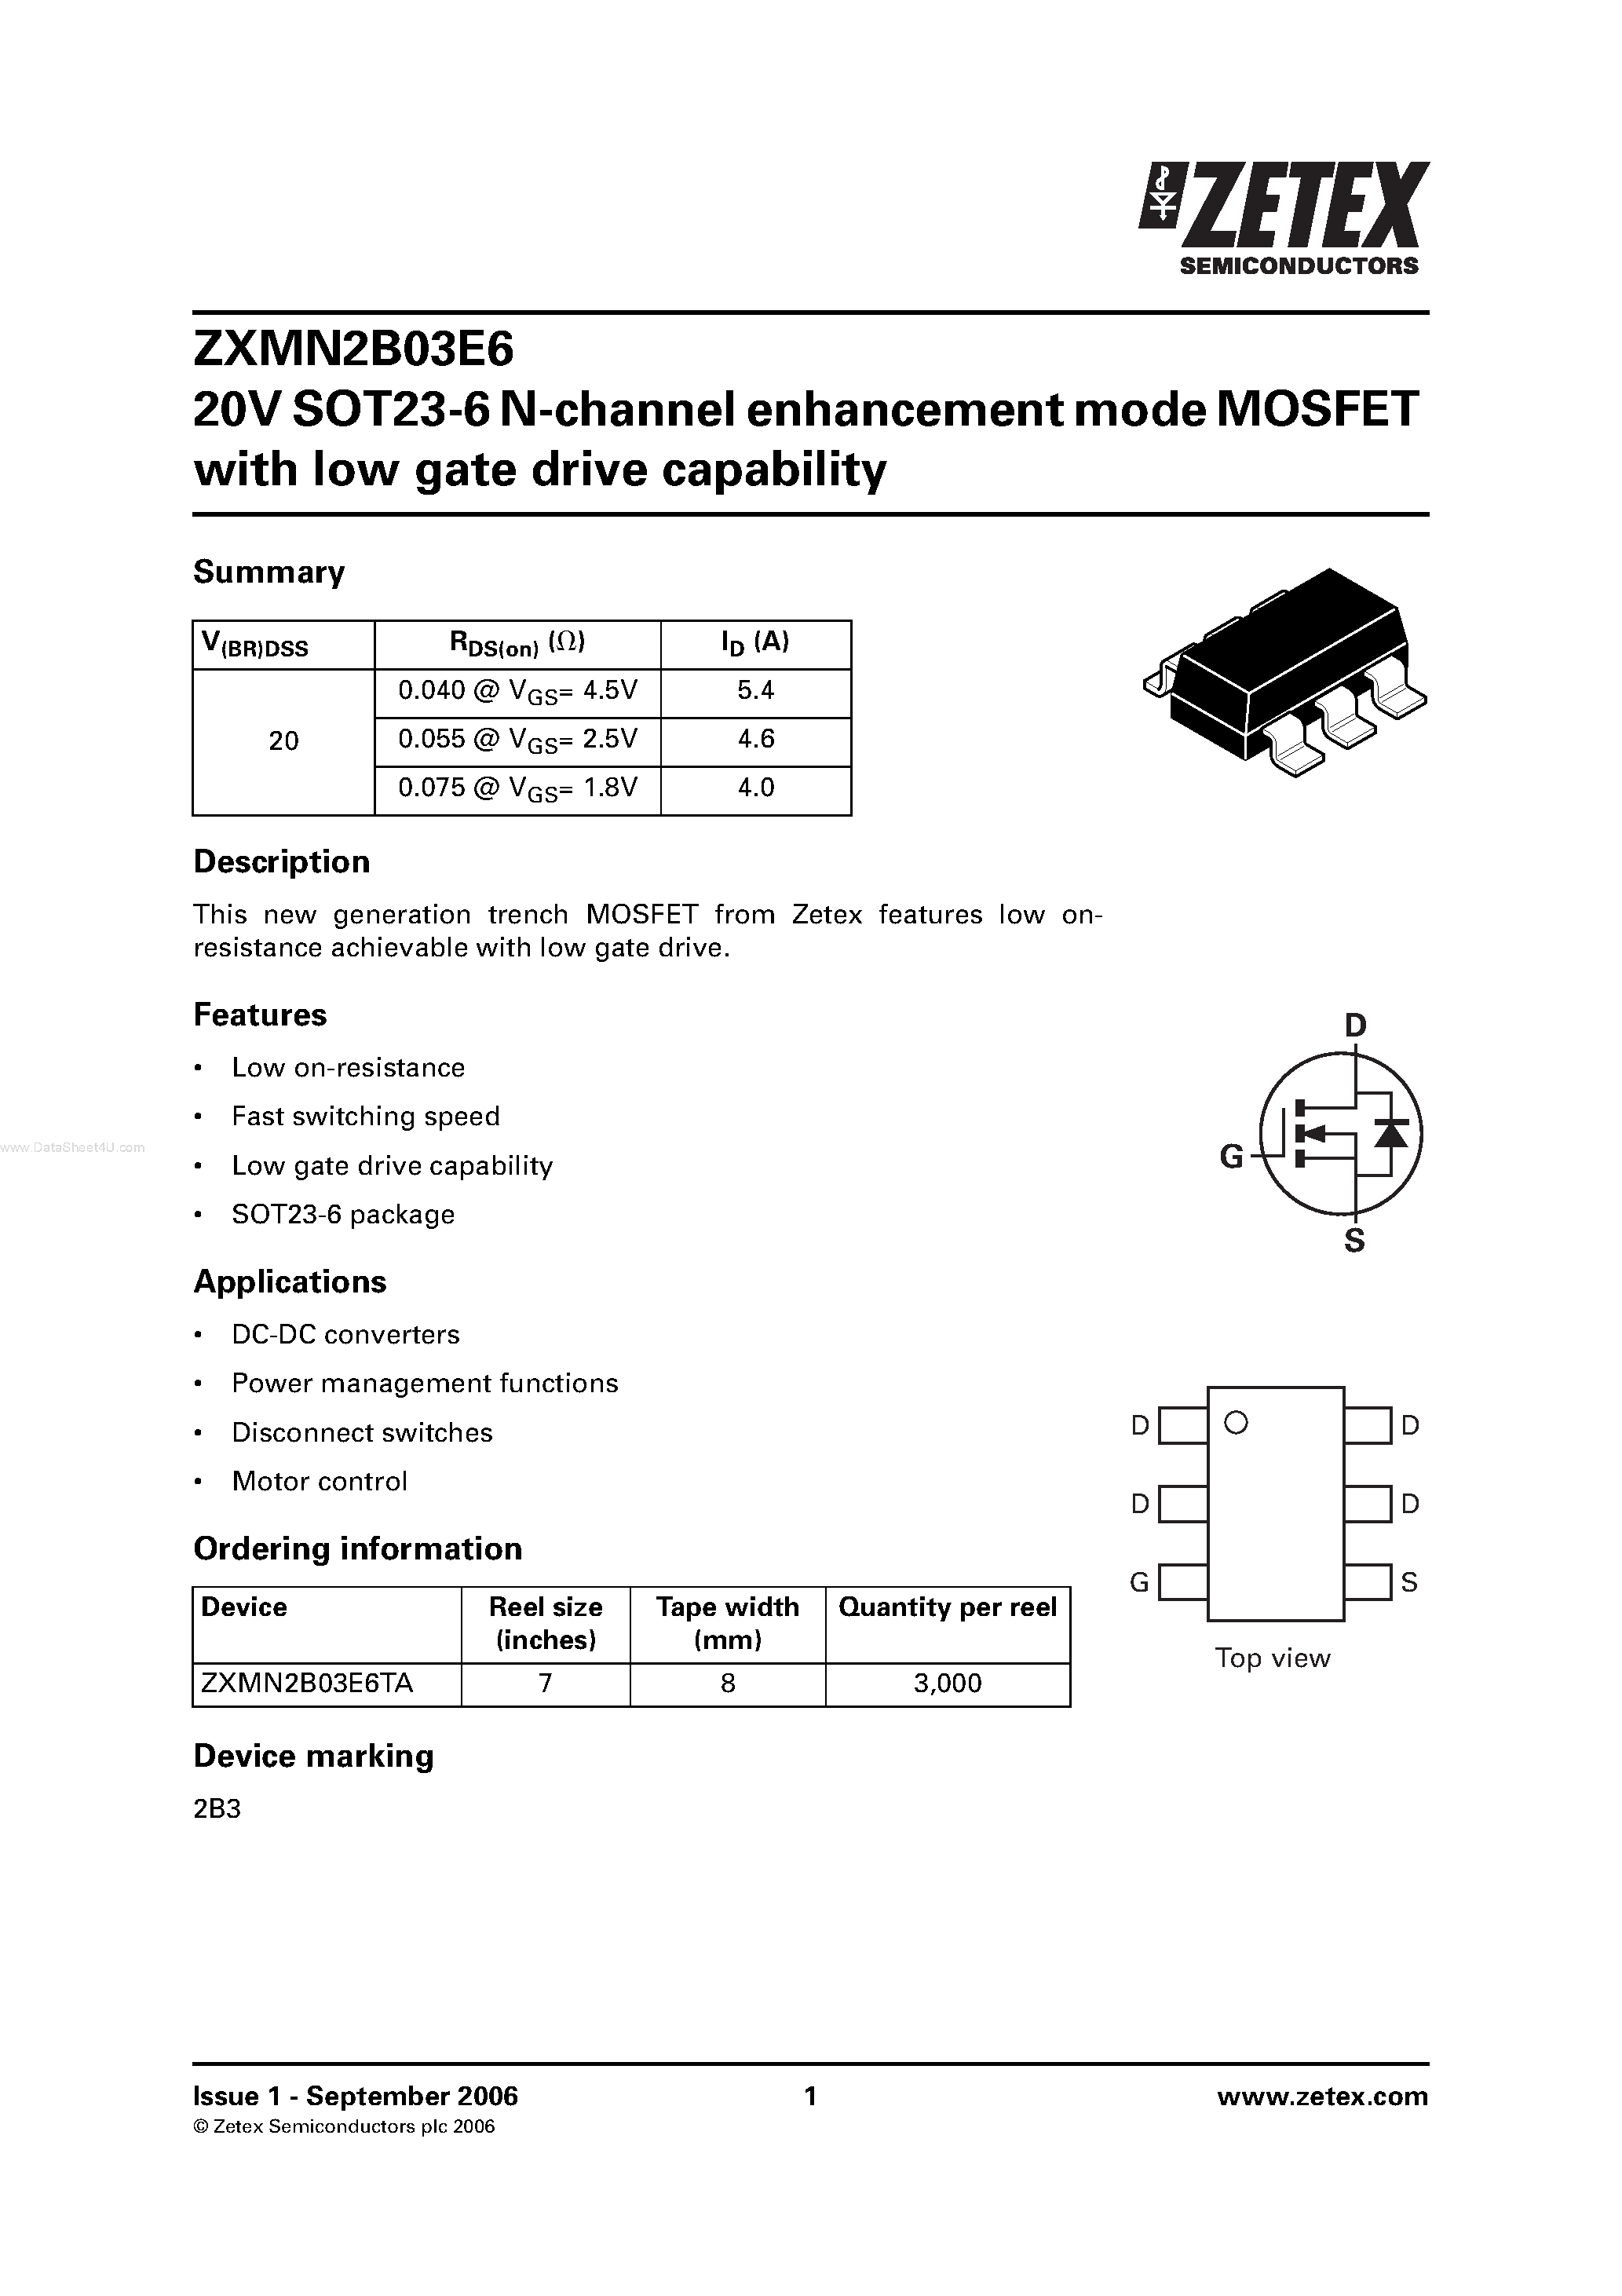 Datasheet ZXMN2B03E6 - SOT23-6 N-channel enhancement mode MOSFET page 1